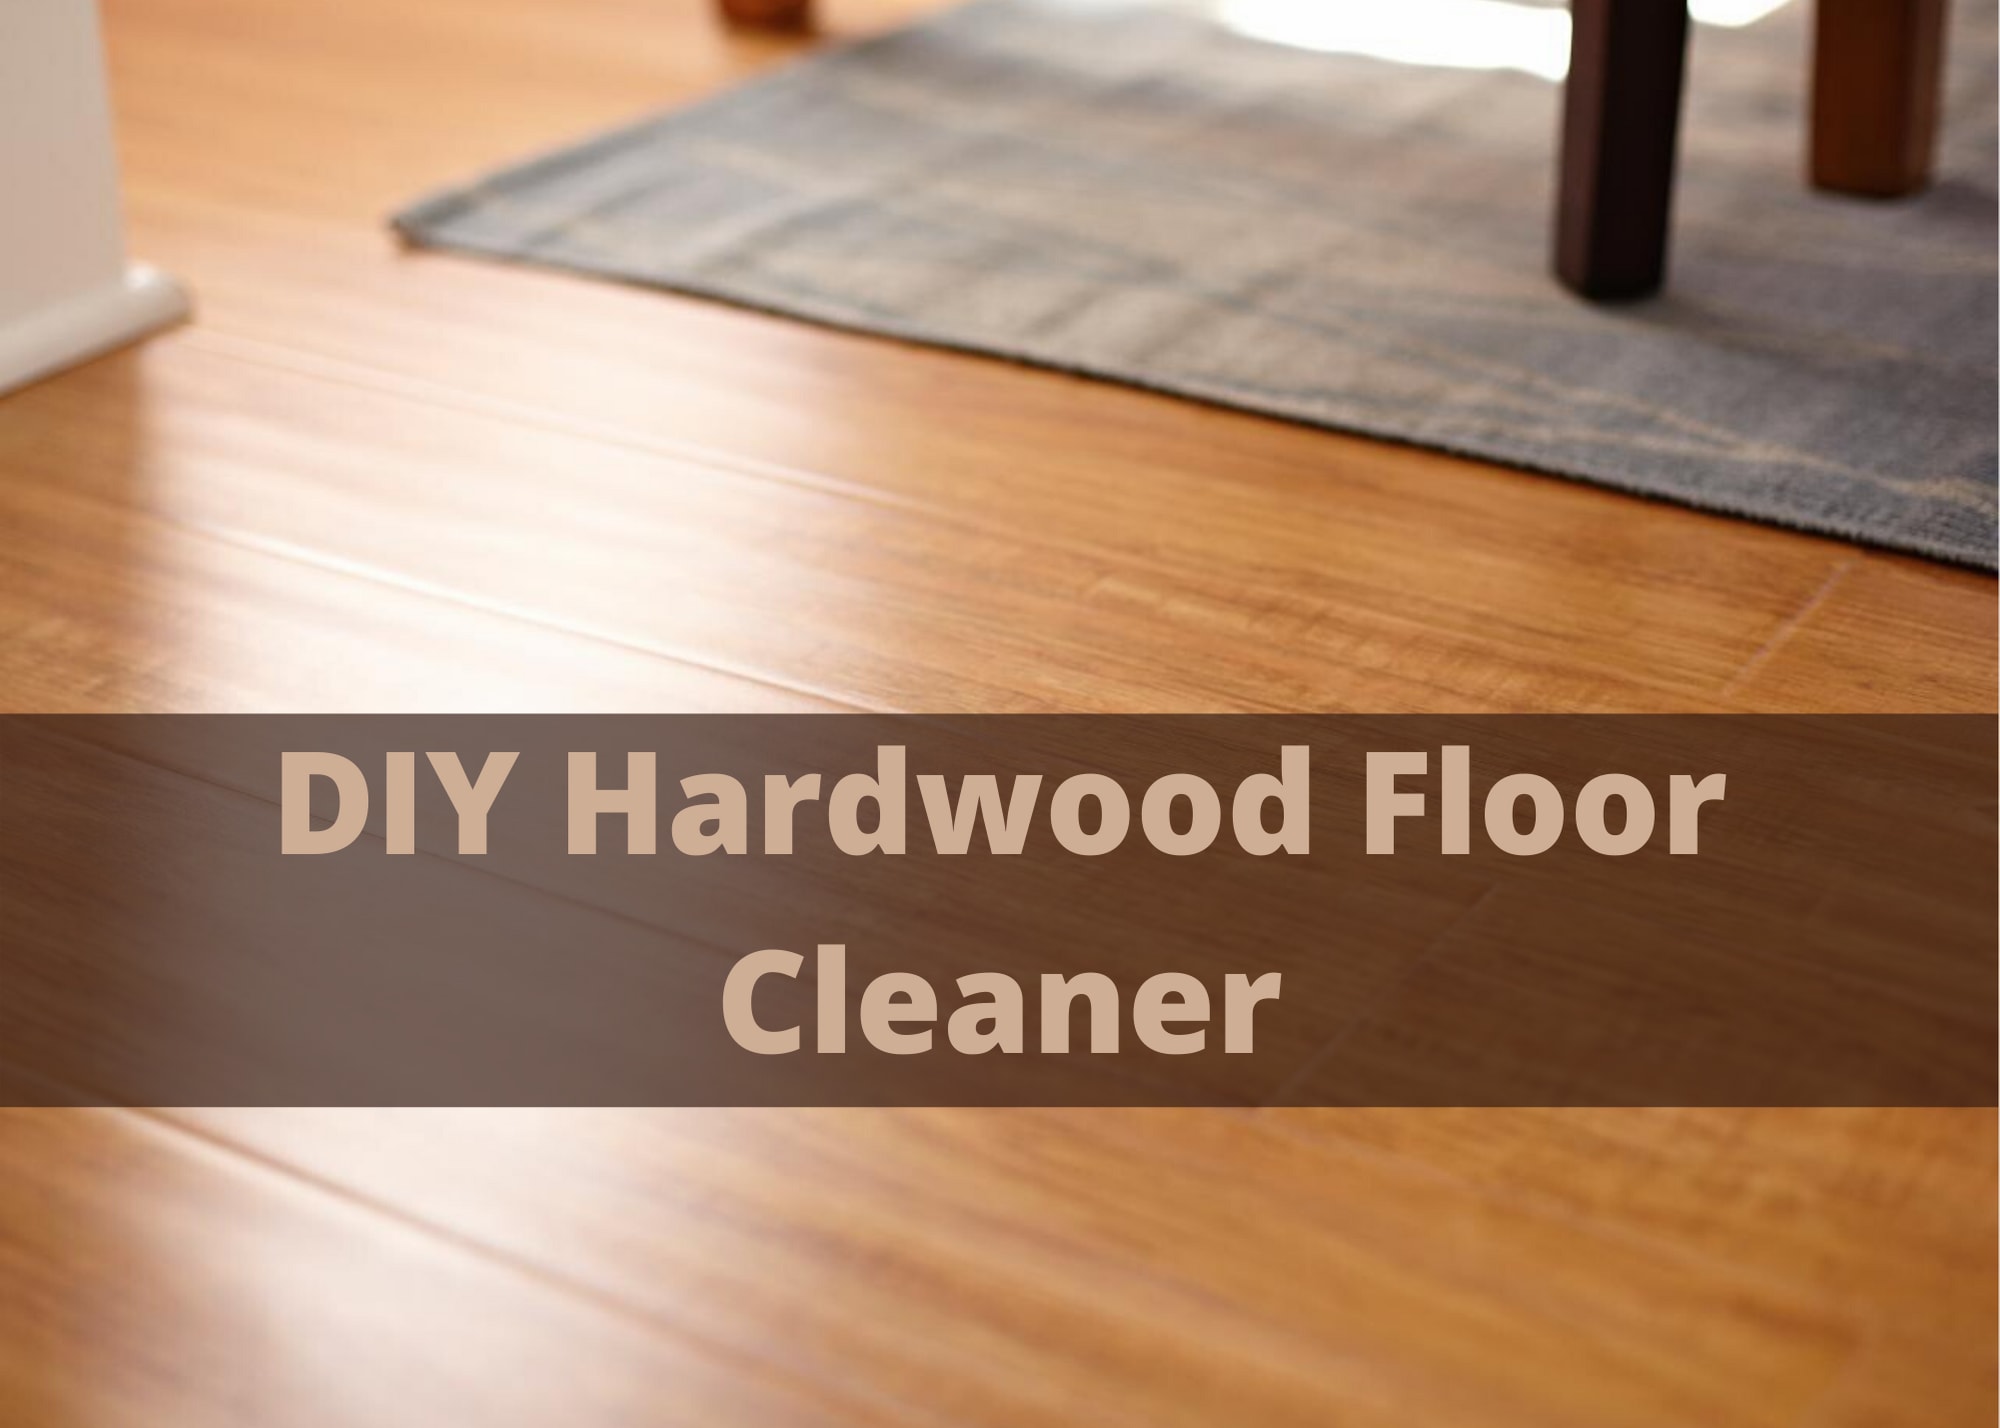 DIY Hardwood Floor Cleaner: Floor Cleaning Made Easy - Clean My Space